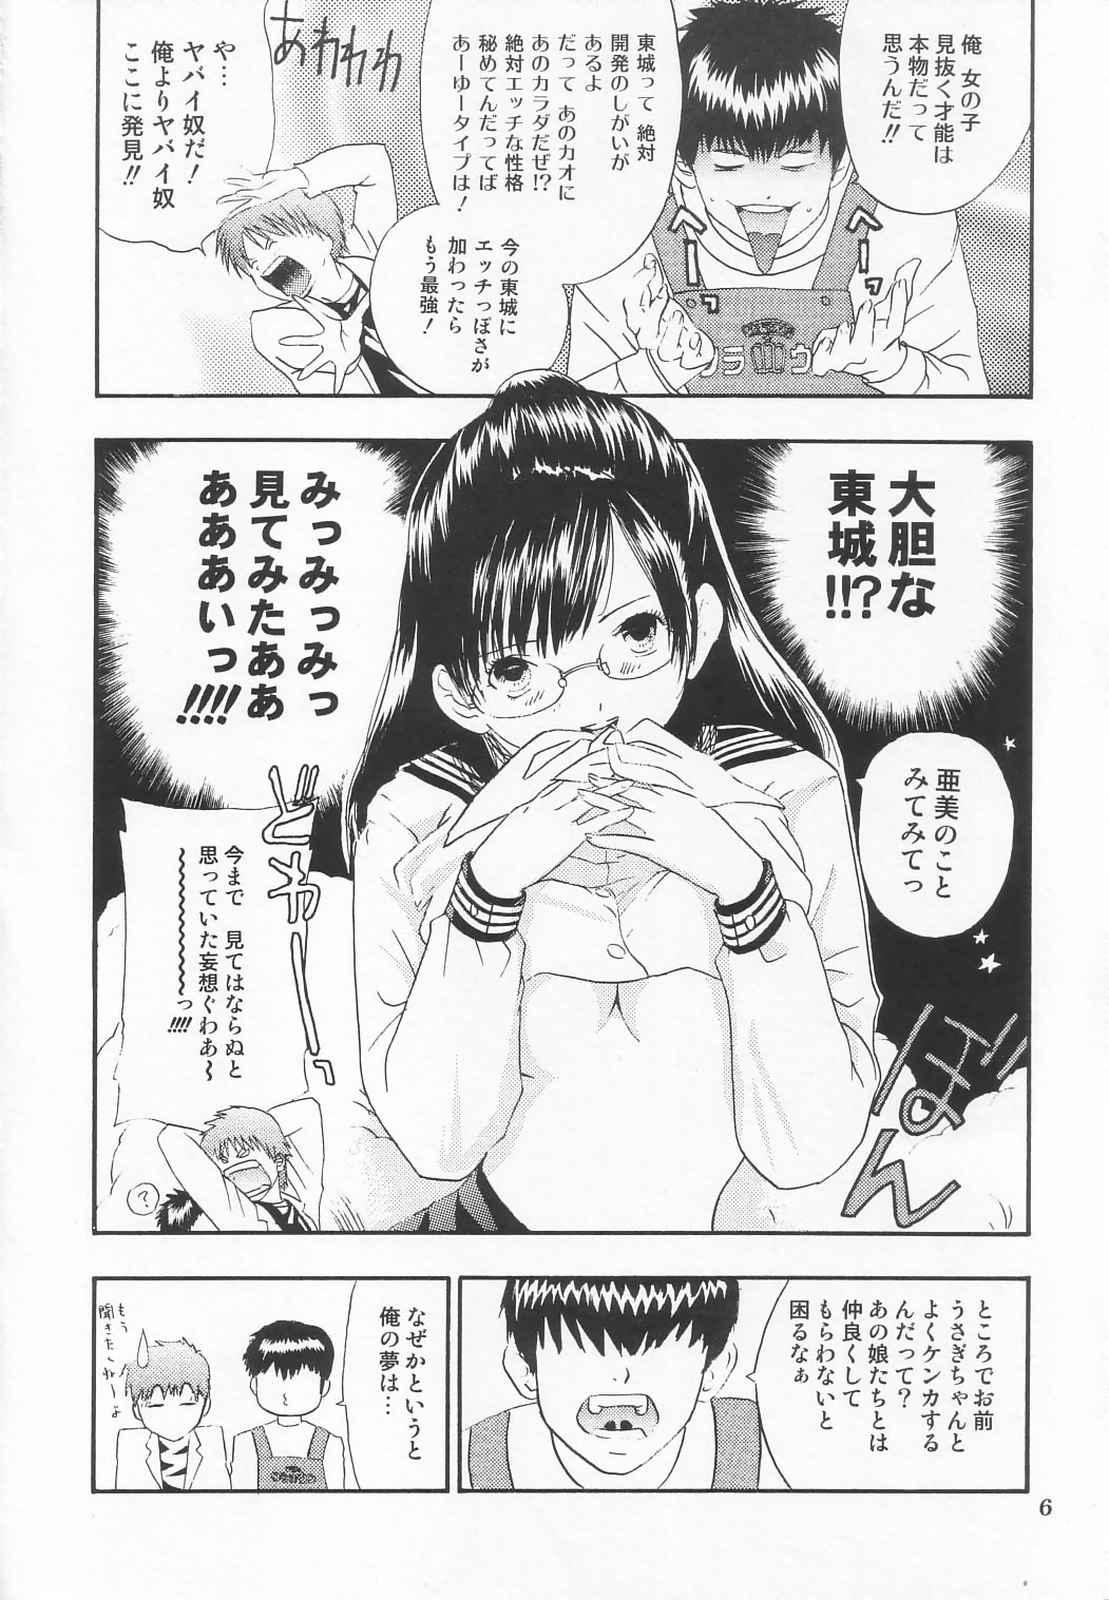 Amatures Gone Wild Tokusatsu Magazine x 2003 Fuyu Gou - Sailor moon Ichigo 100 Speculum - Page 8